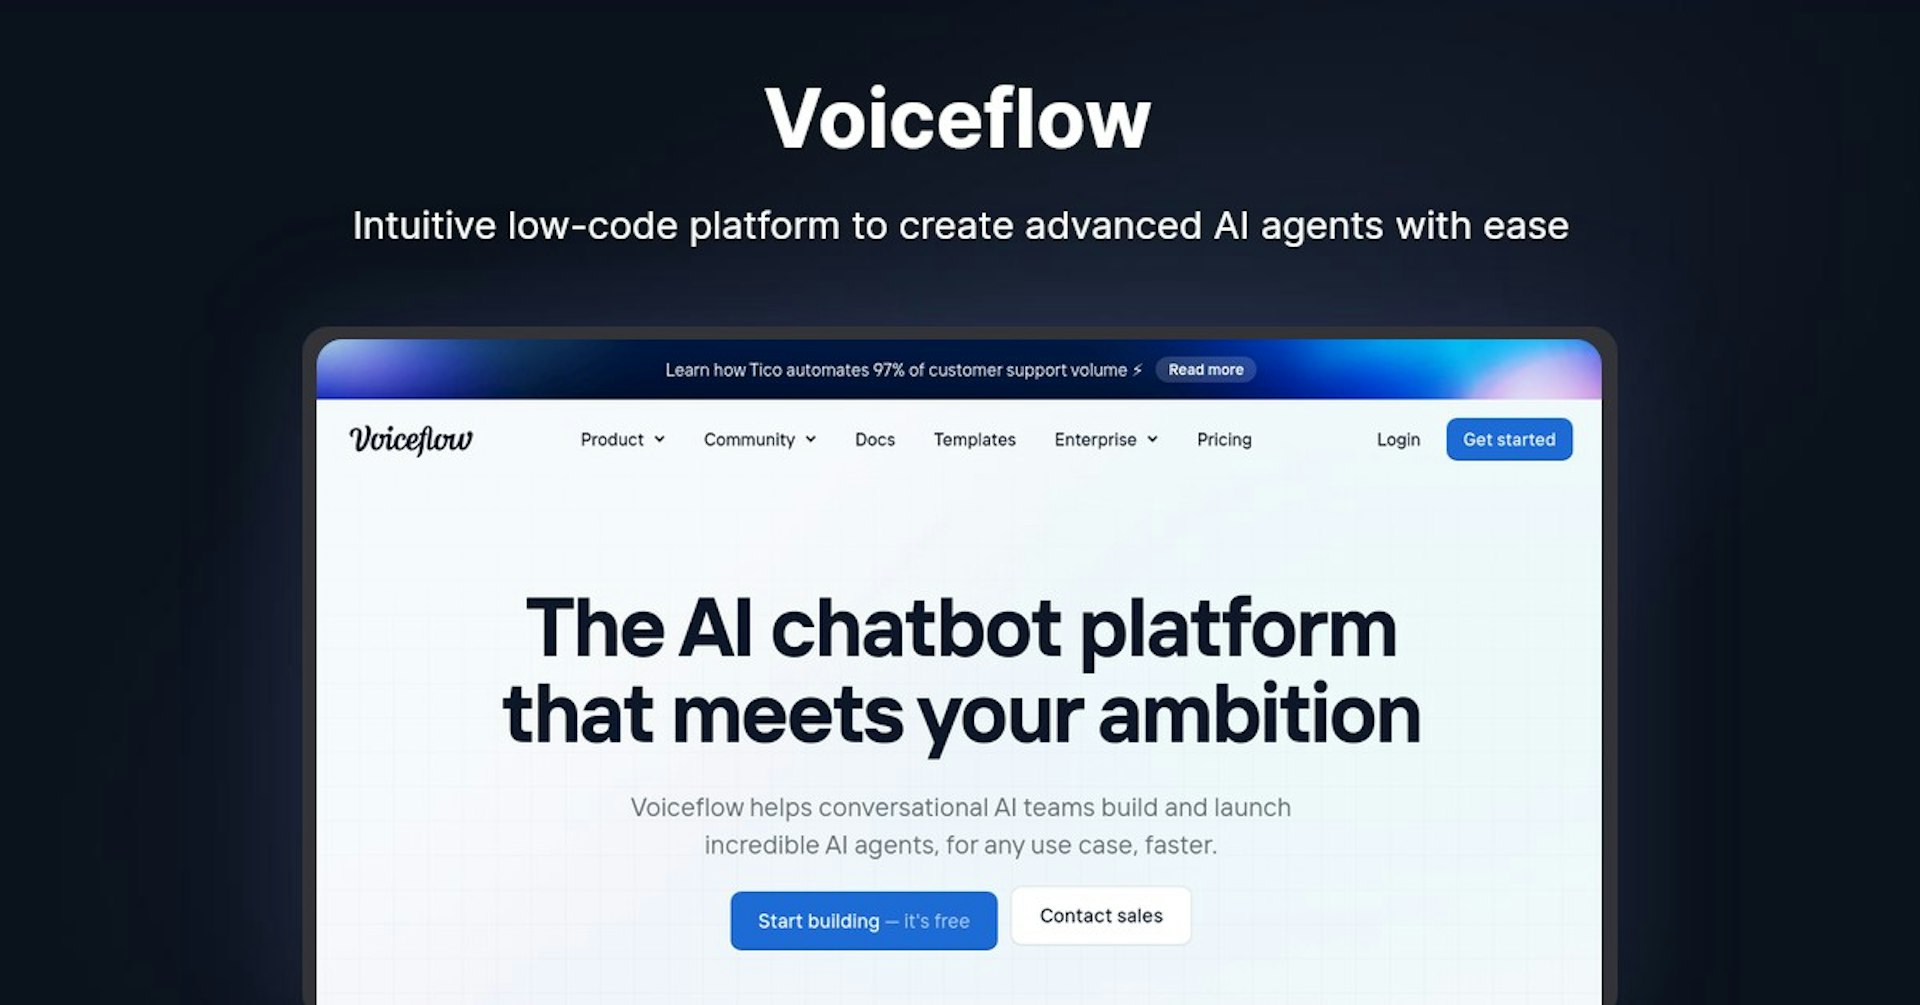 Voiceflow